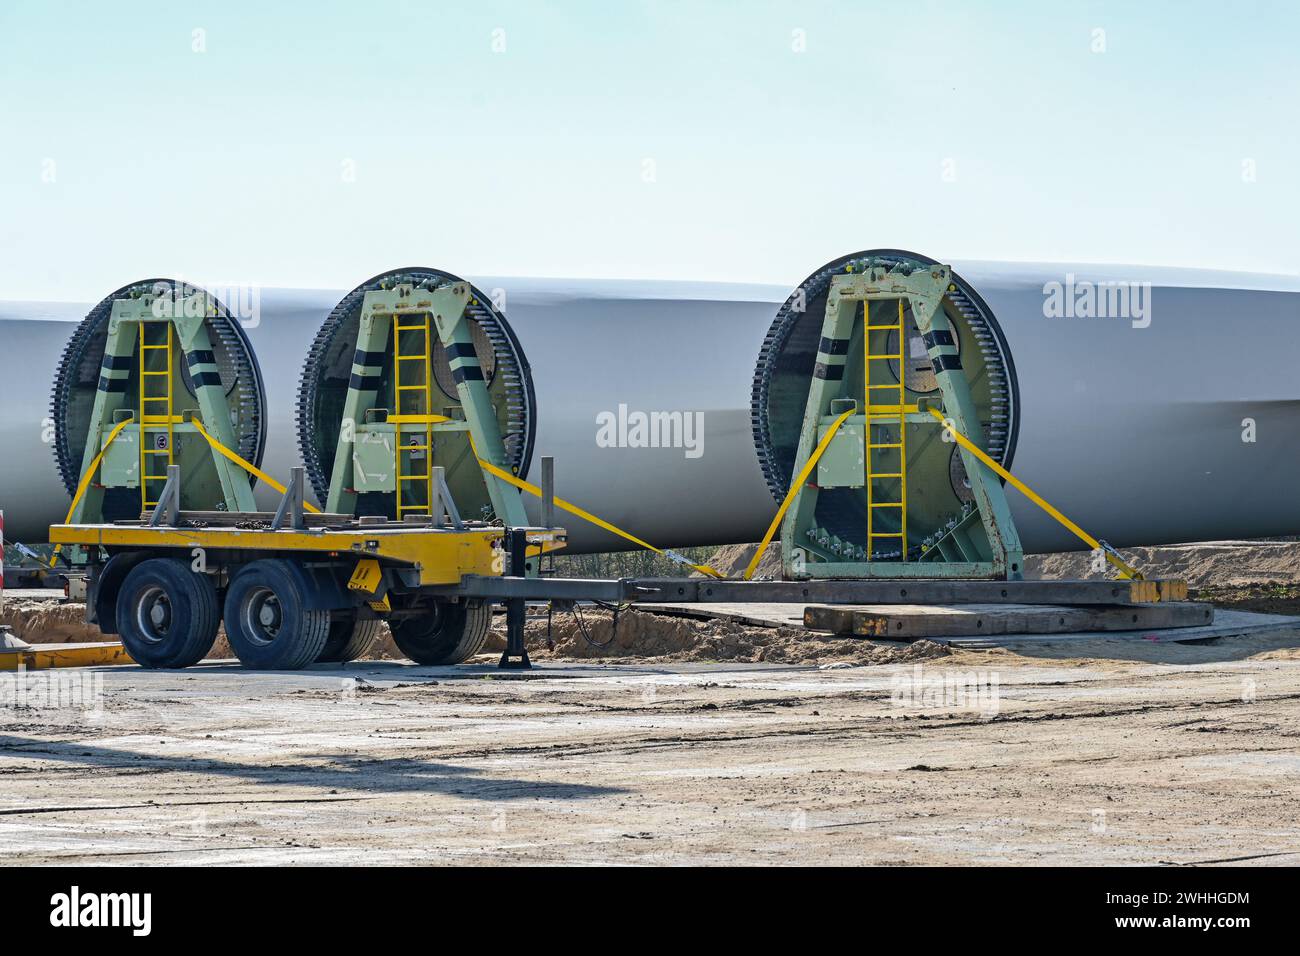 Las palas de la turbina eólica se almacenan cerca del sitio de construcción, industria pesada en preparación para una planta de energía renovable, cop Foto de stock